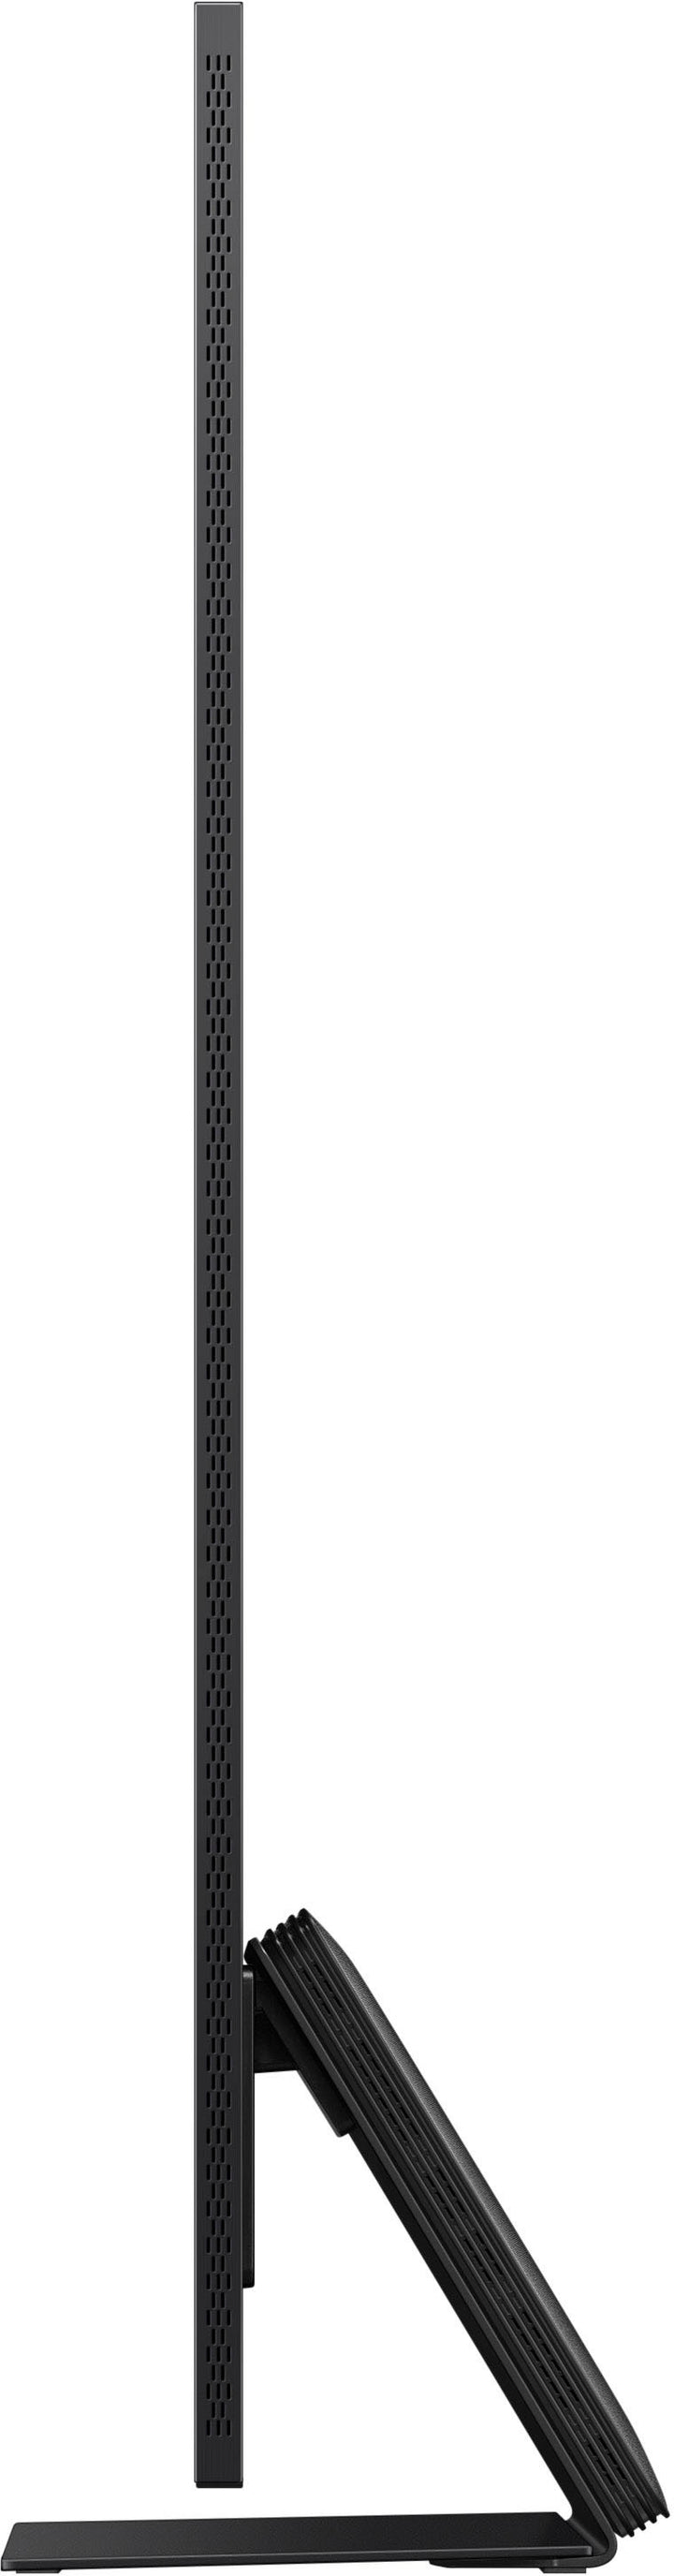 Samsung - 65” Class QN800D Series Neo QLED 8K Smart Tizen TV_7